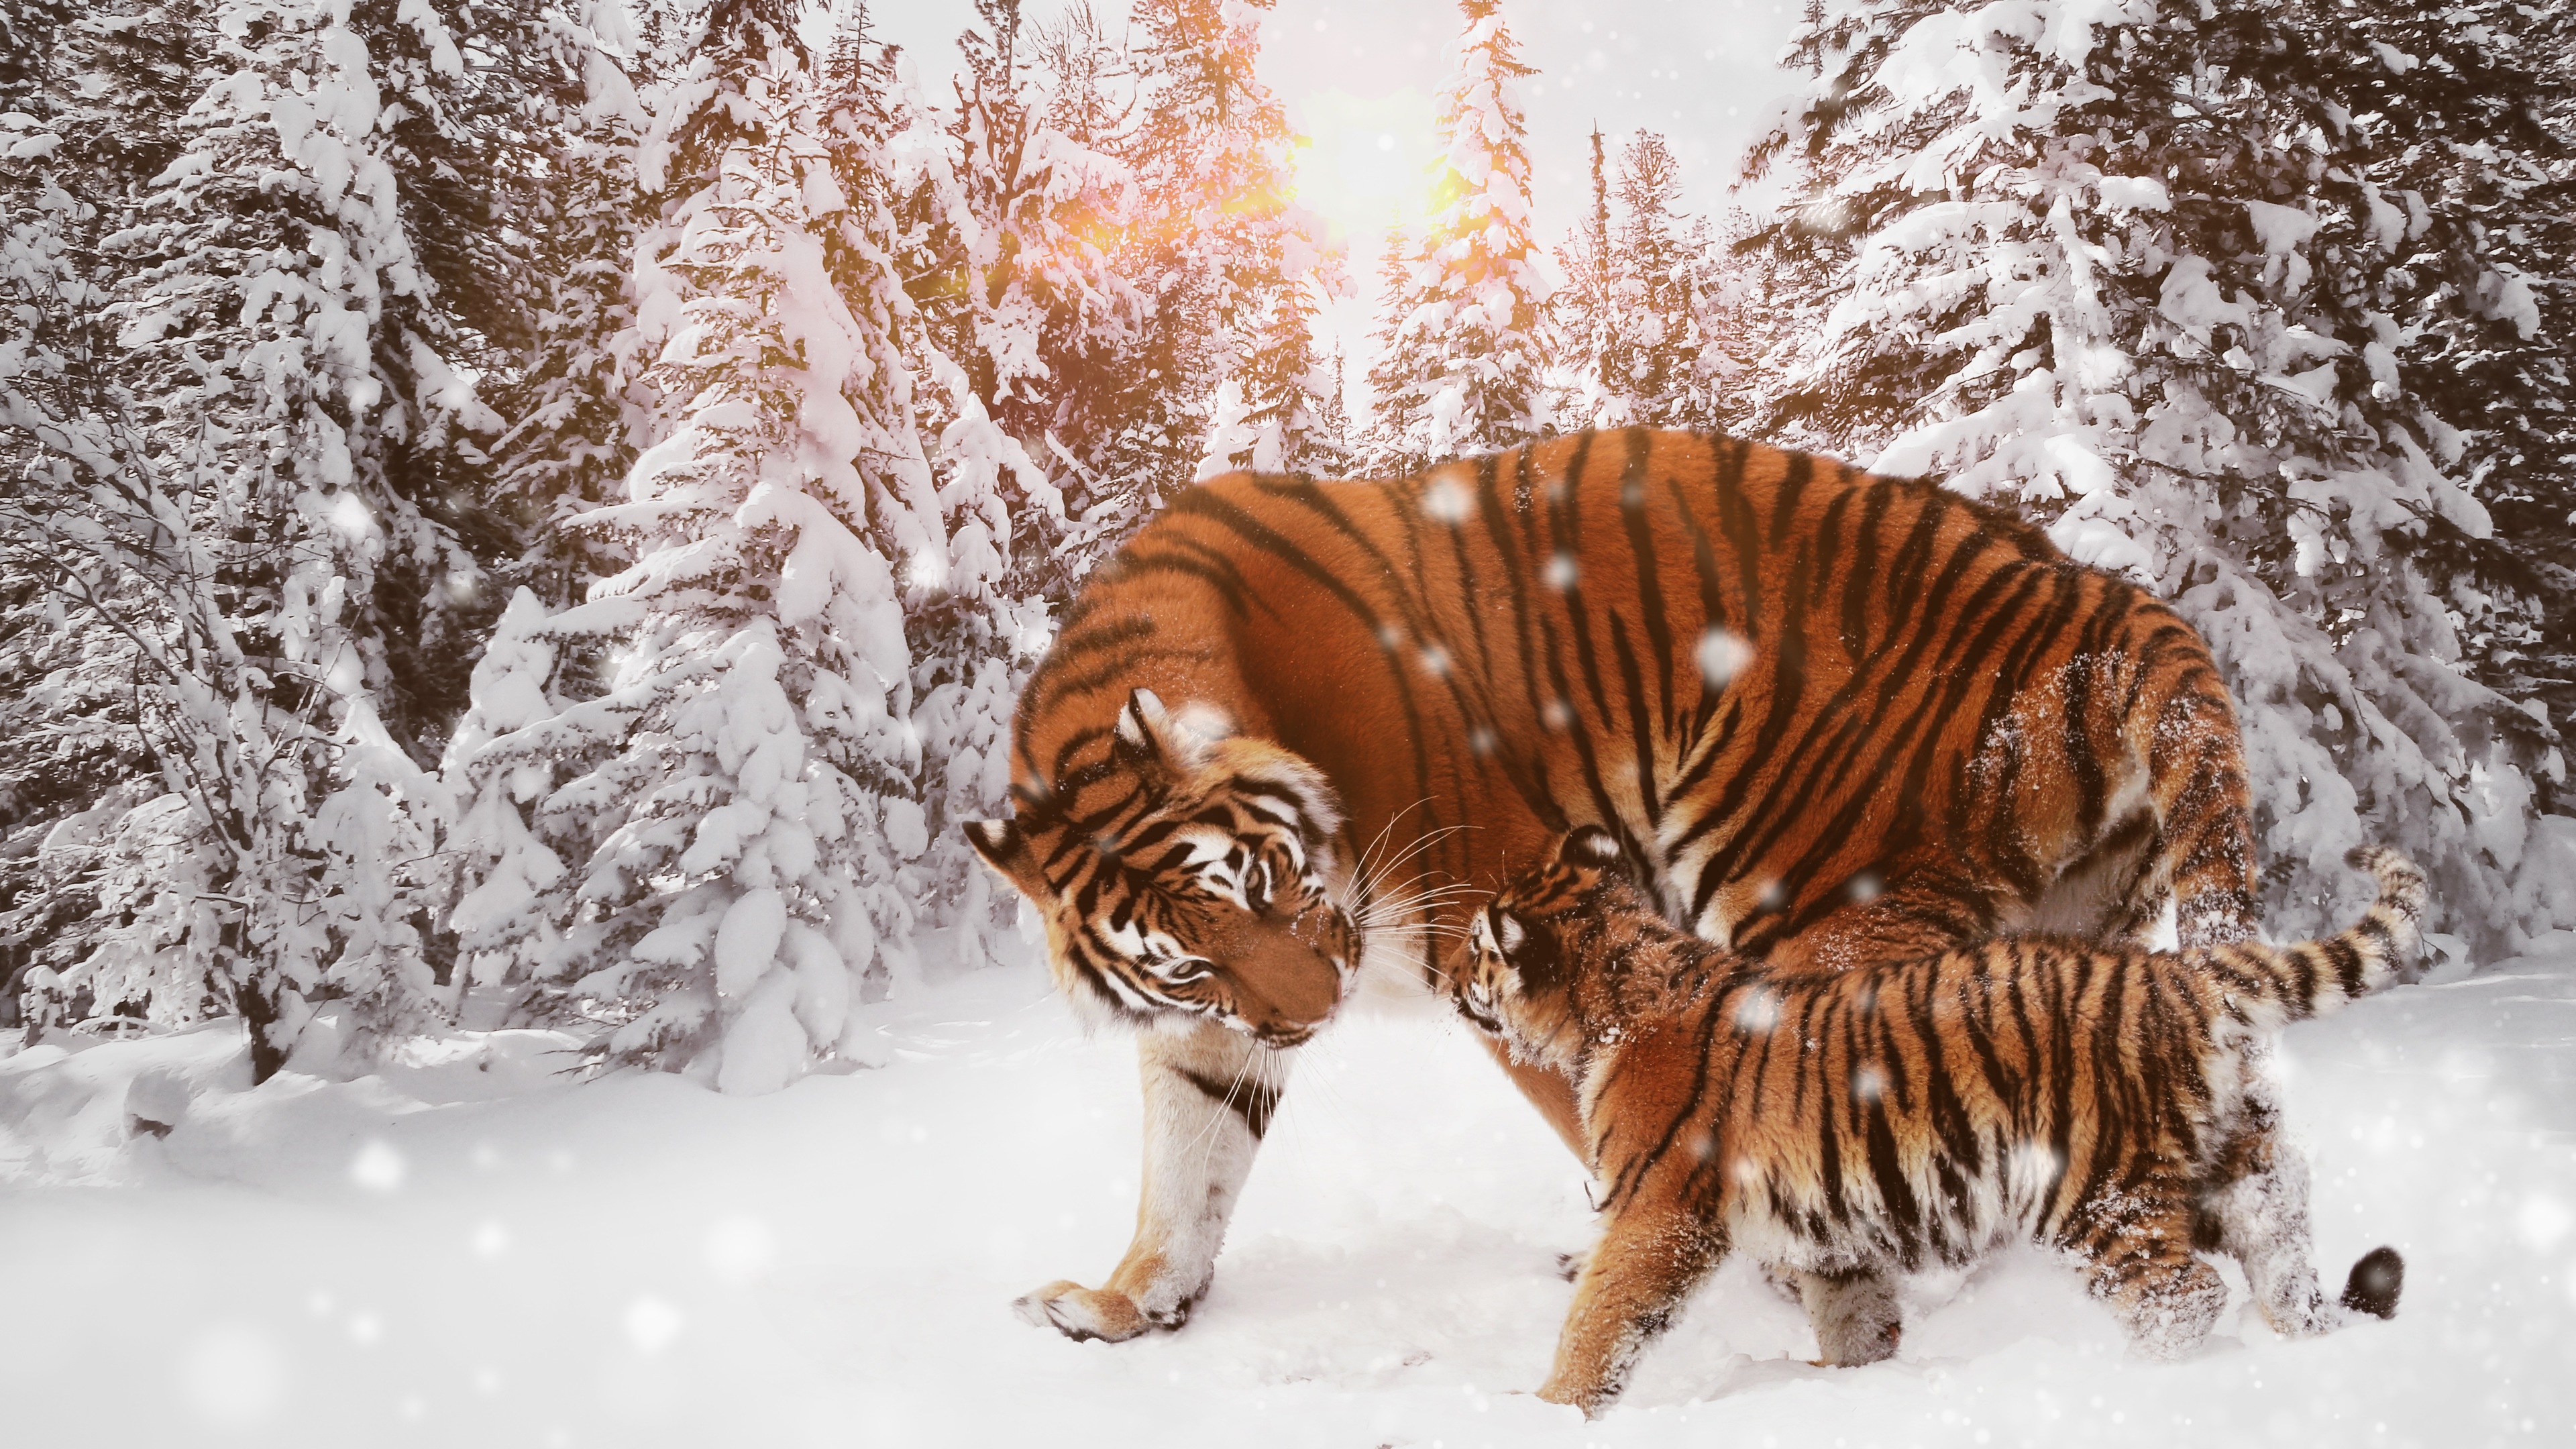 Tiger With Cub 4k - Tiger In Snow Hd - HD Wallpaper 